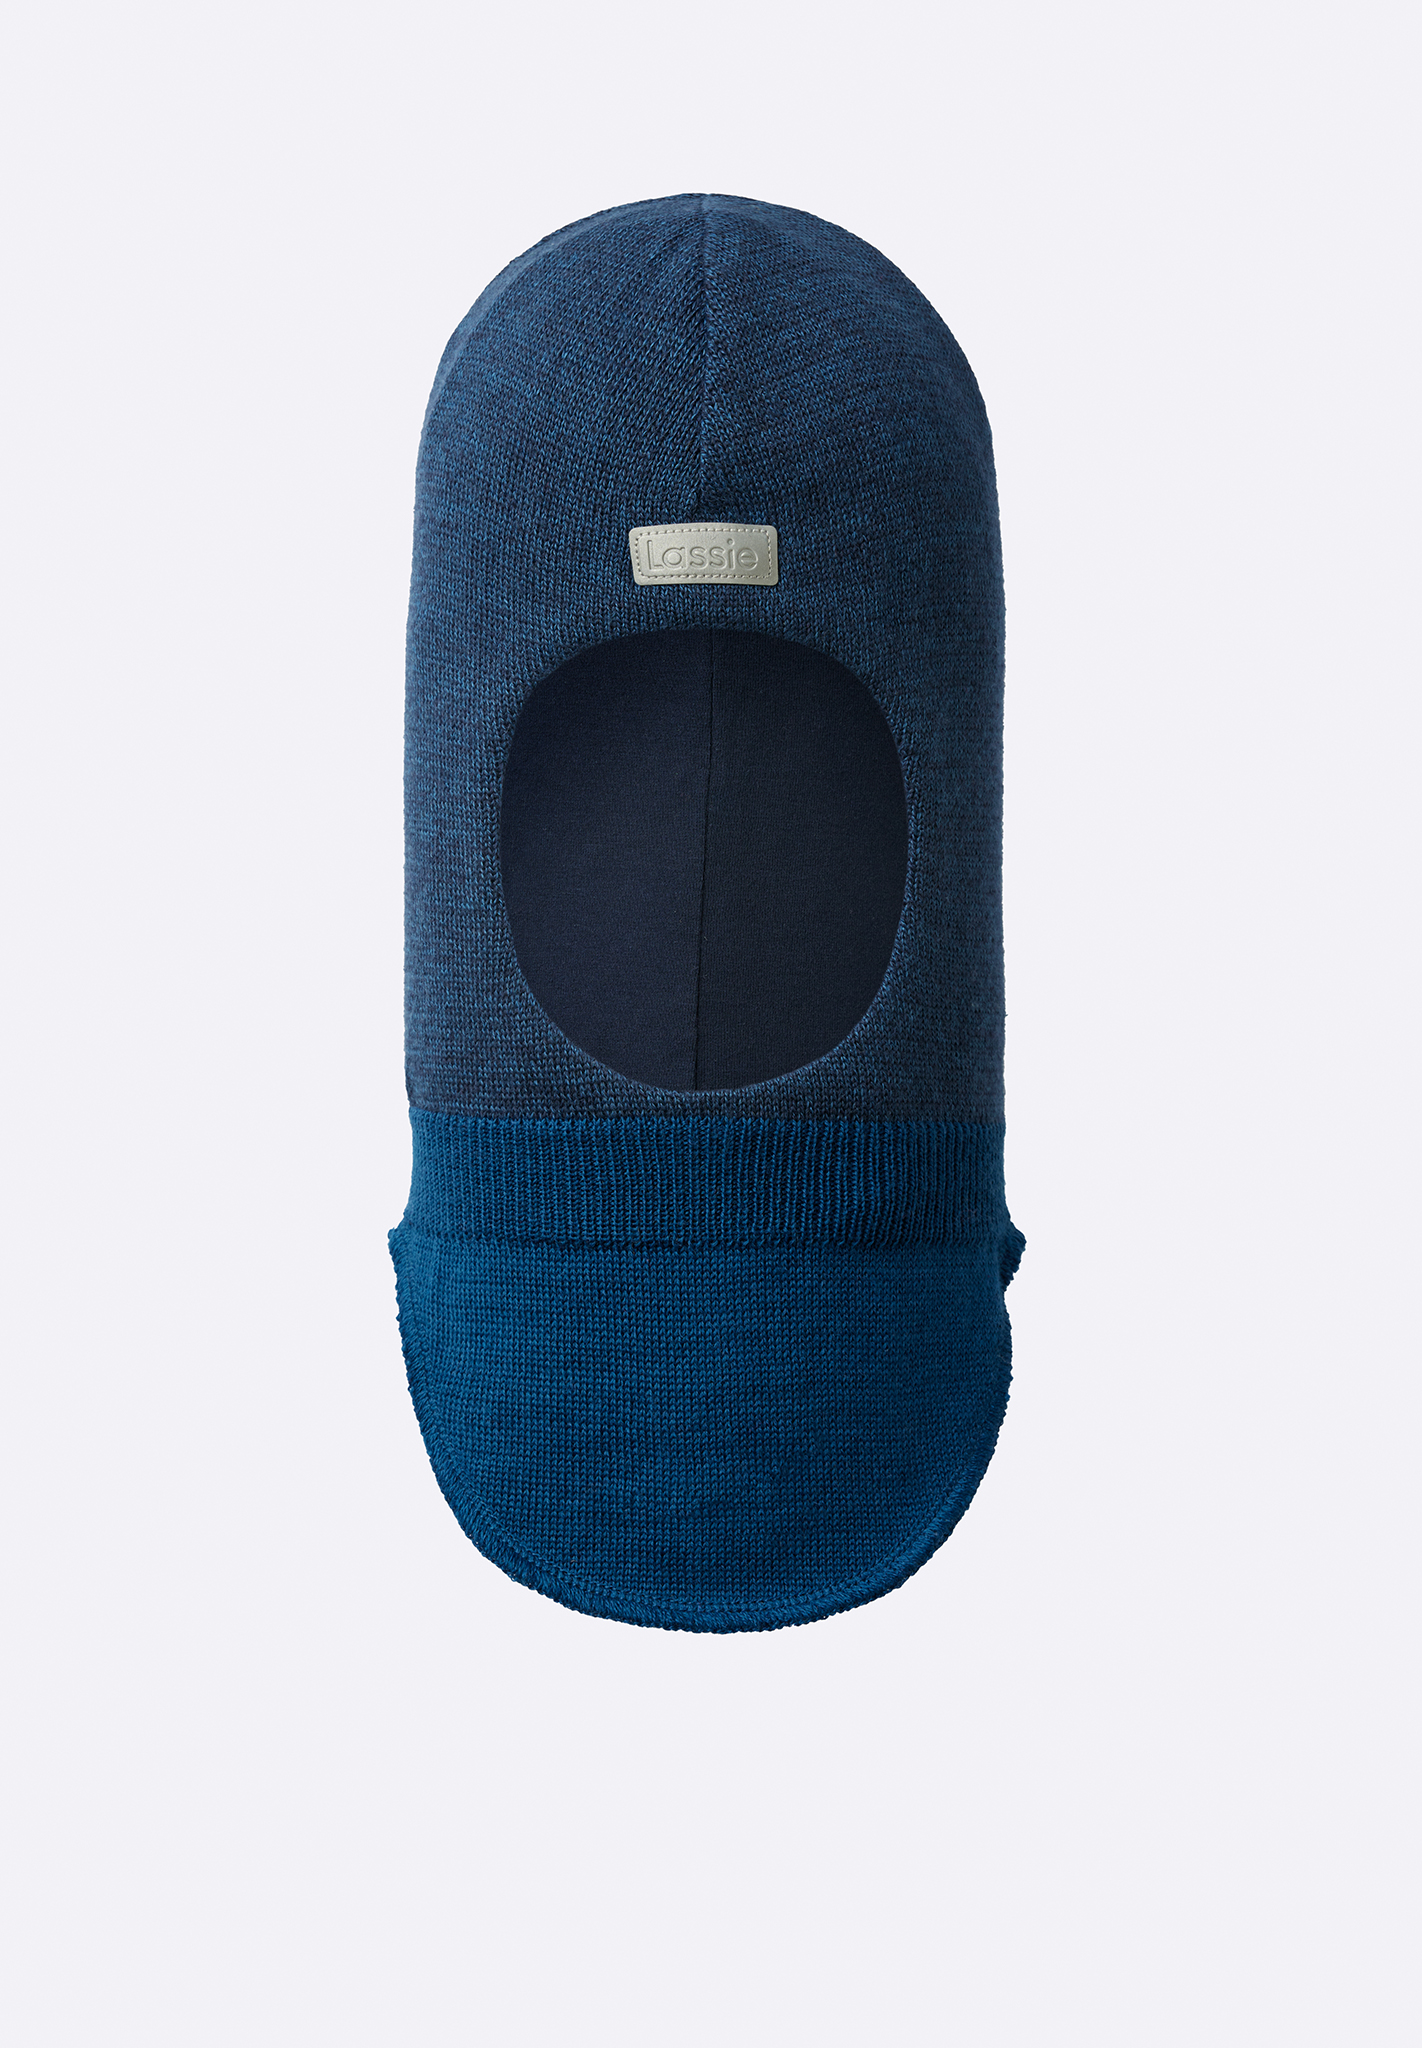 Шапка-шлем Lassie для мальчиков, синяя, размер 048, 7300016B6821048 синяя шапка шлем из шерсти jan